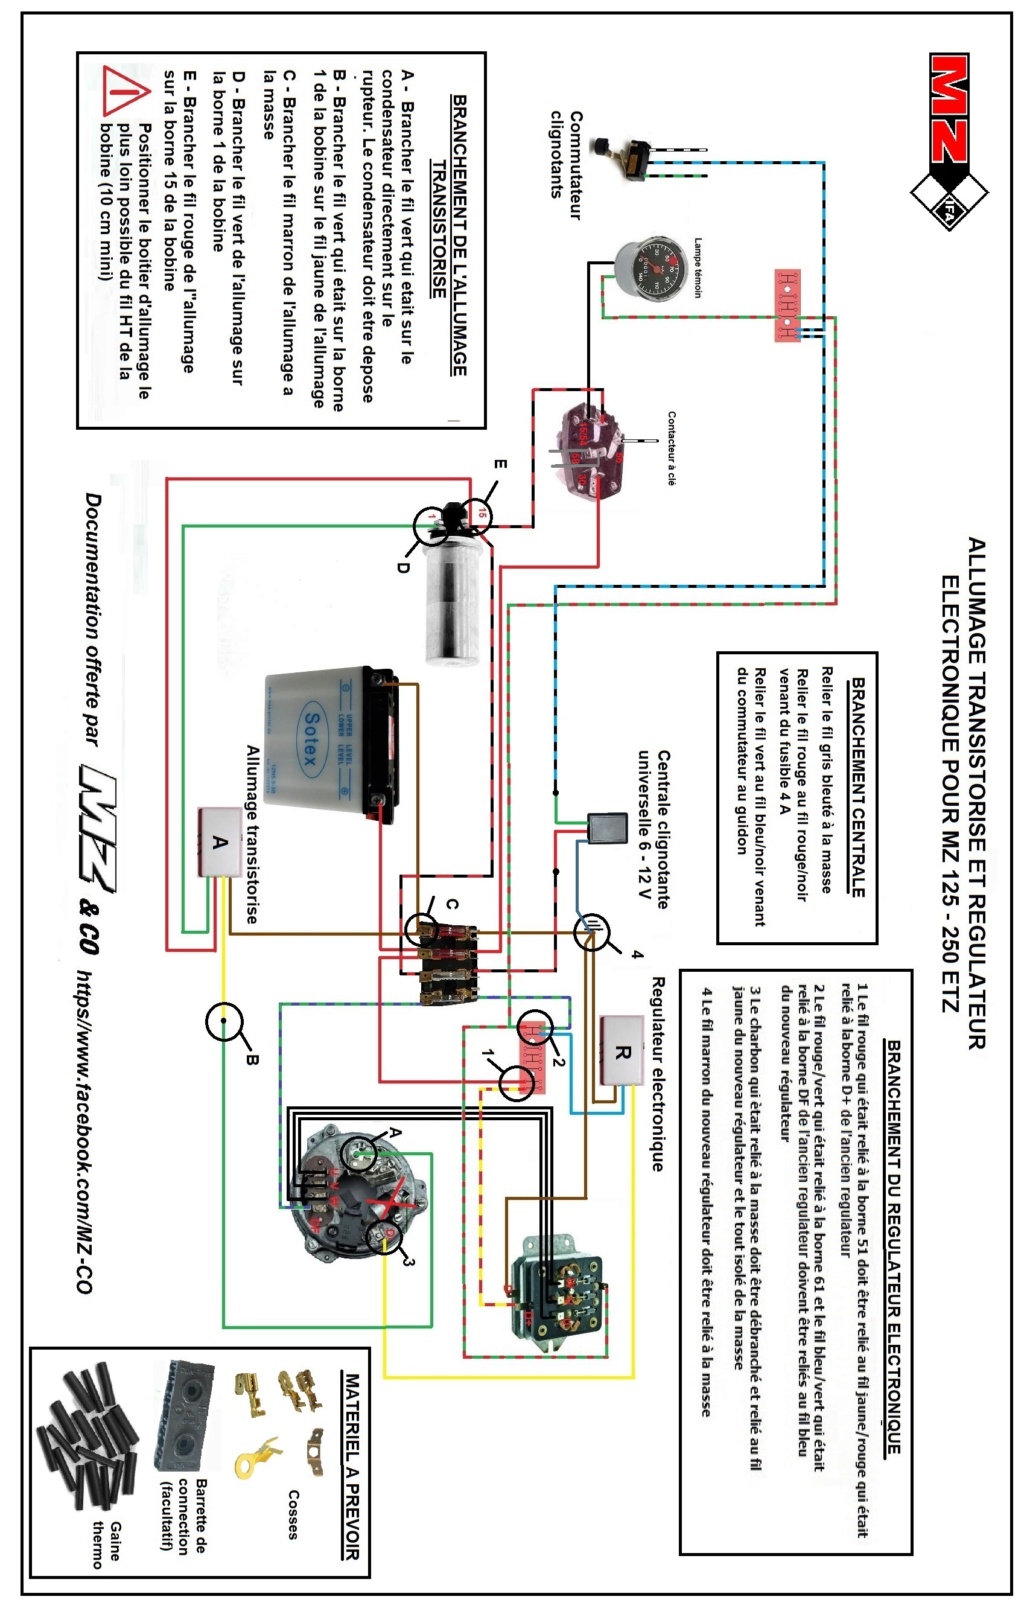 allumage - Circuit allumage électronique pour rupteur - Page 5 Circui26